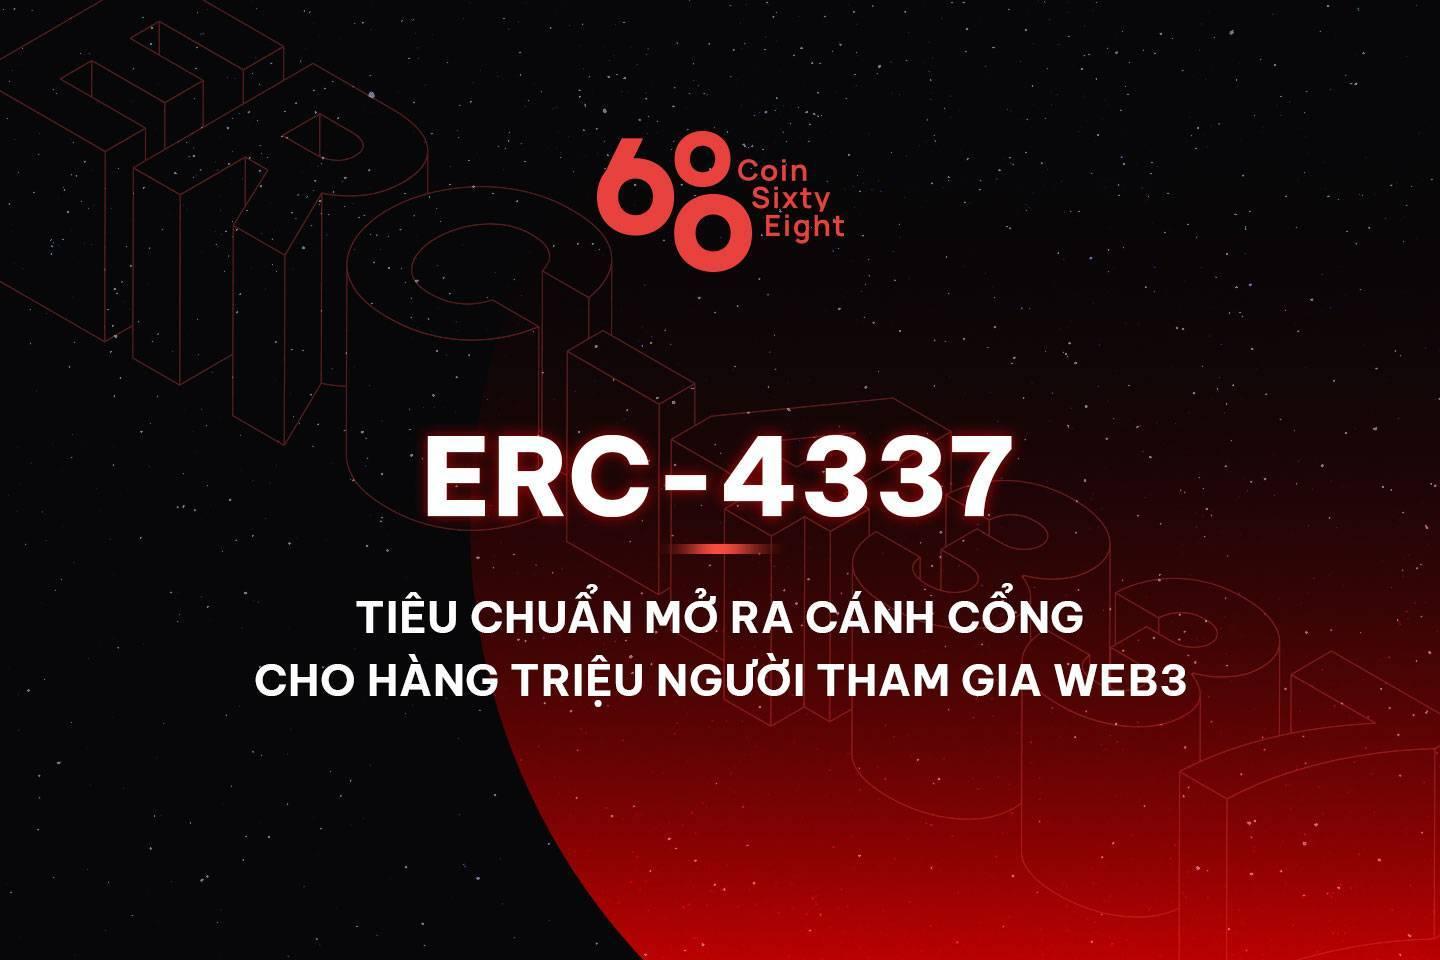 erc-4337-tieu-chuan-mo-ra-canh-cong-cho-hang-trieu-nguoi-tham-gia-web3